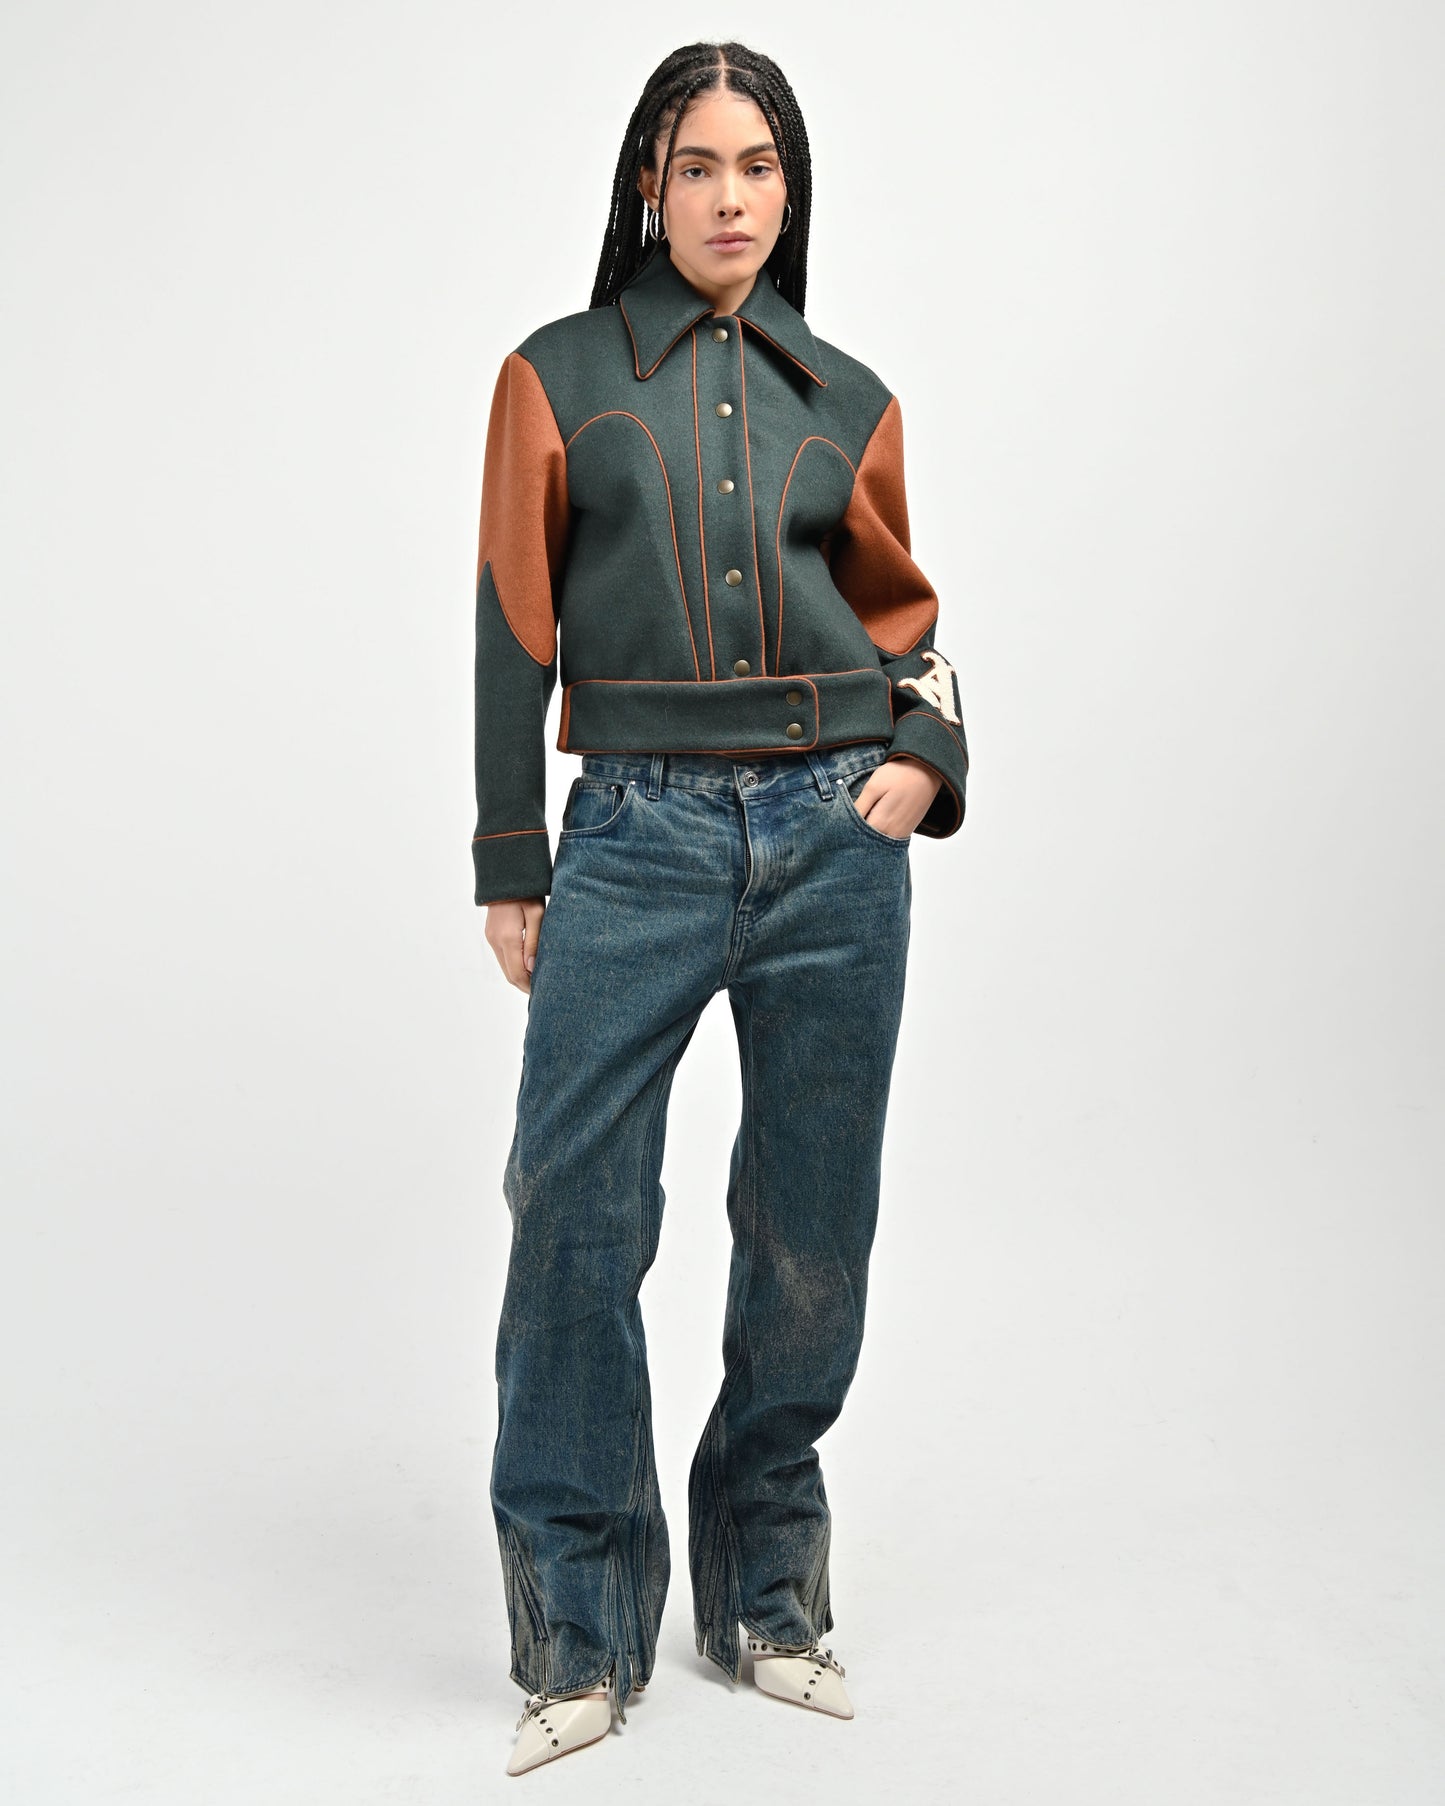 Model is wearing a size Small in Green Rue Varsity jacket by Aseye Studio